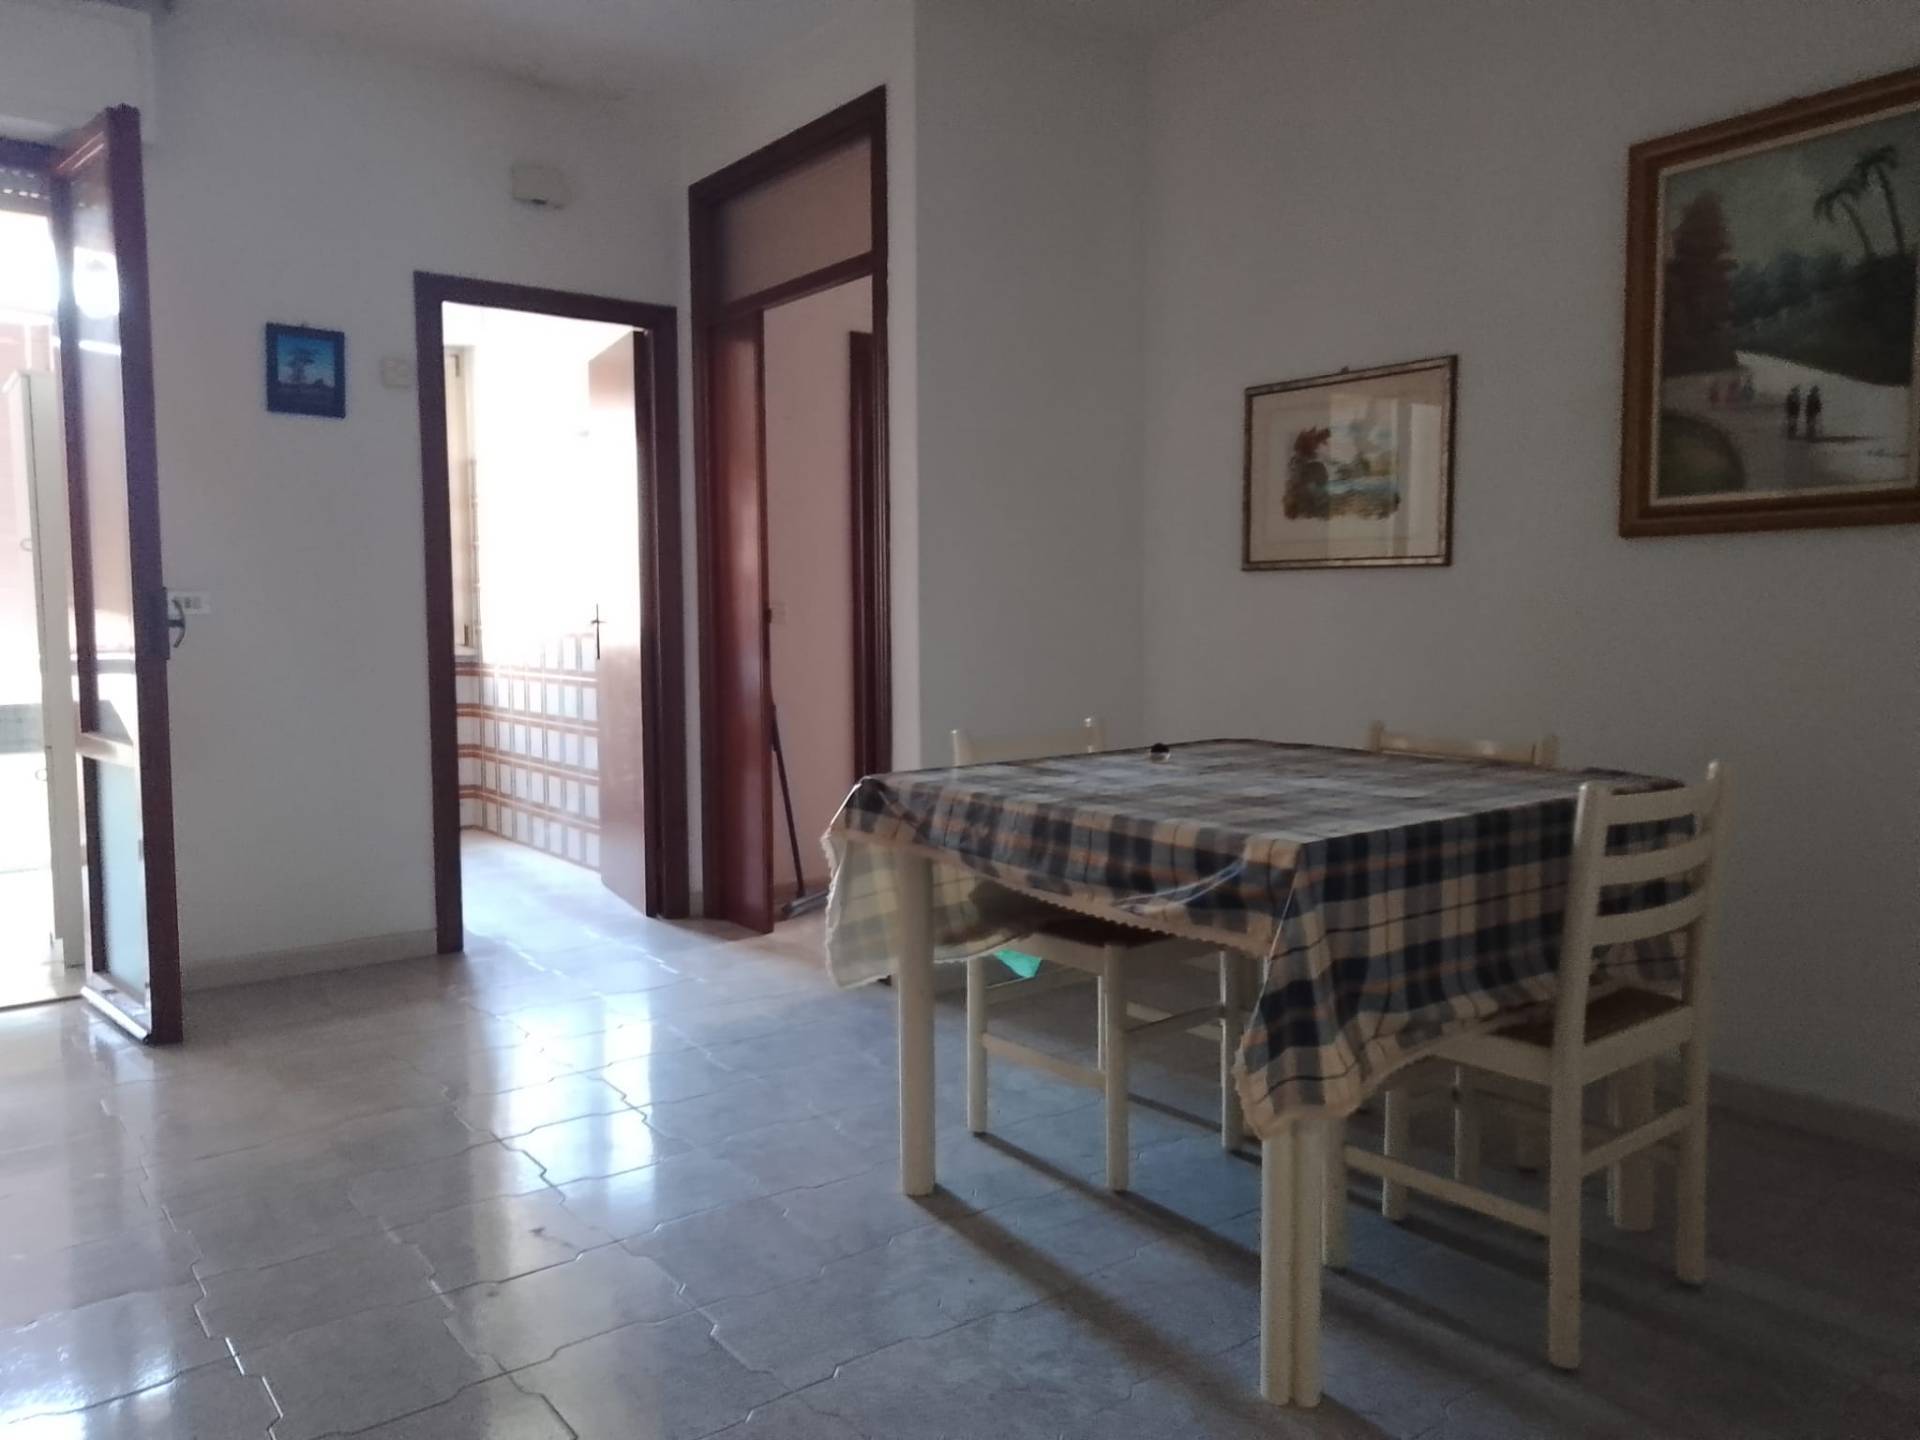 Appartamento in vendita a Giulianova, 3 locali, zona Località: Lido, prezzo € 150.000 | PortaleAgenzieImmobiliari.it